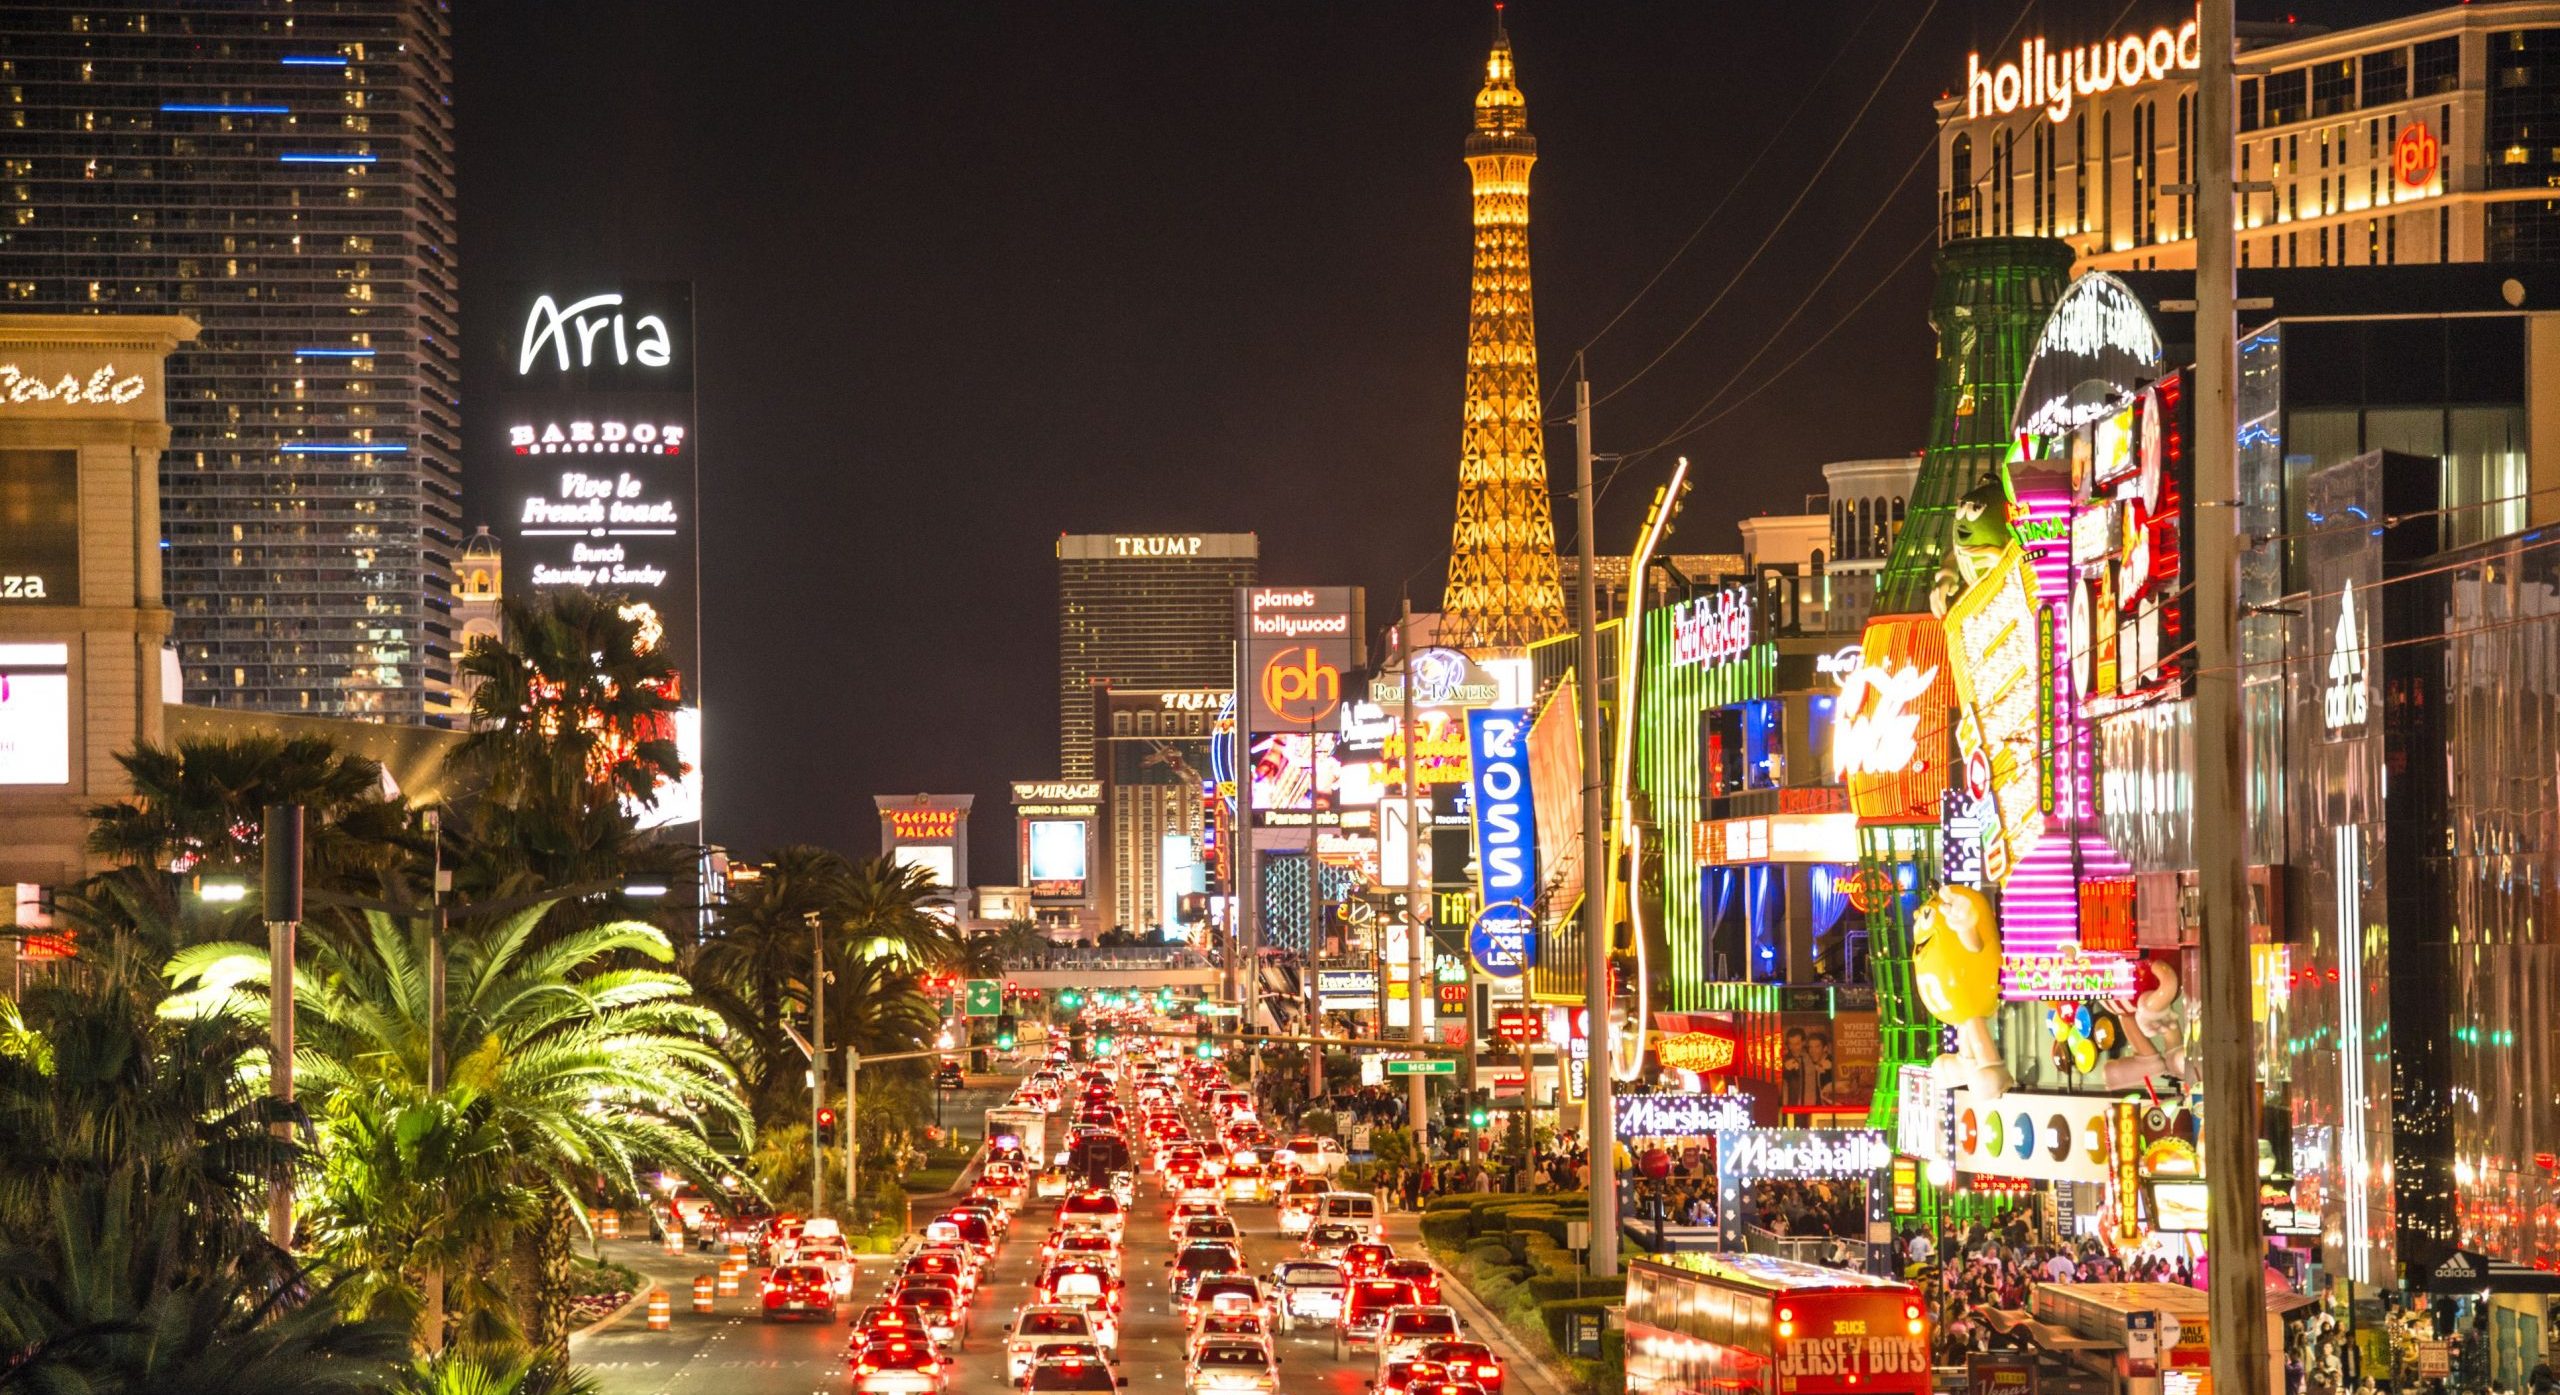 Las Vegas News, las vegas strip traffic and casinos at night